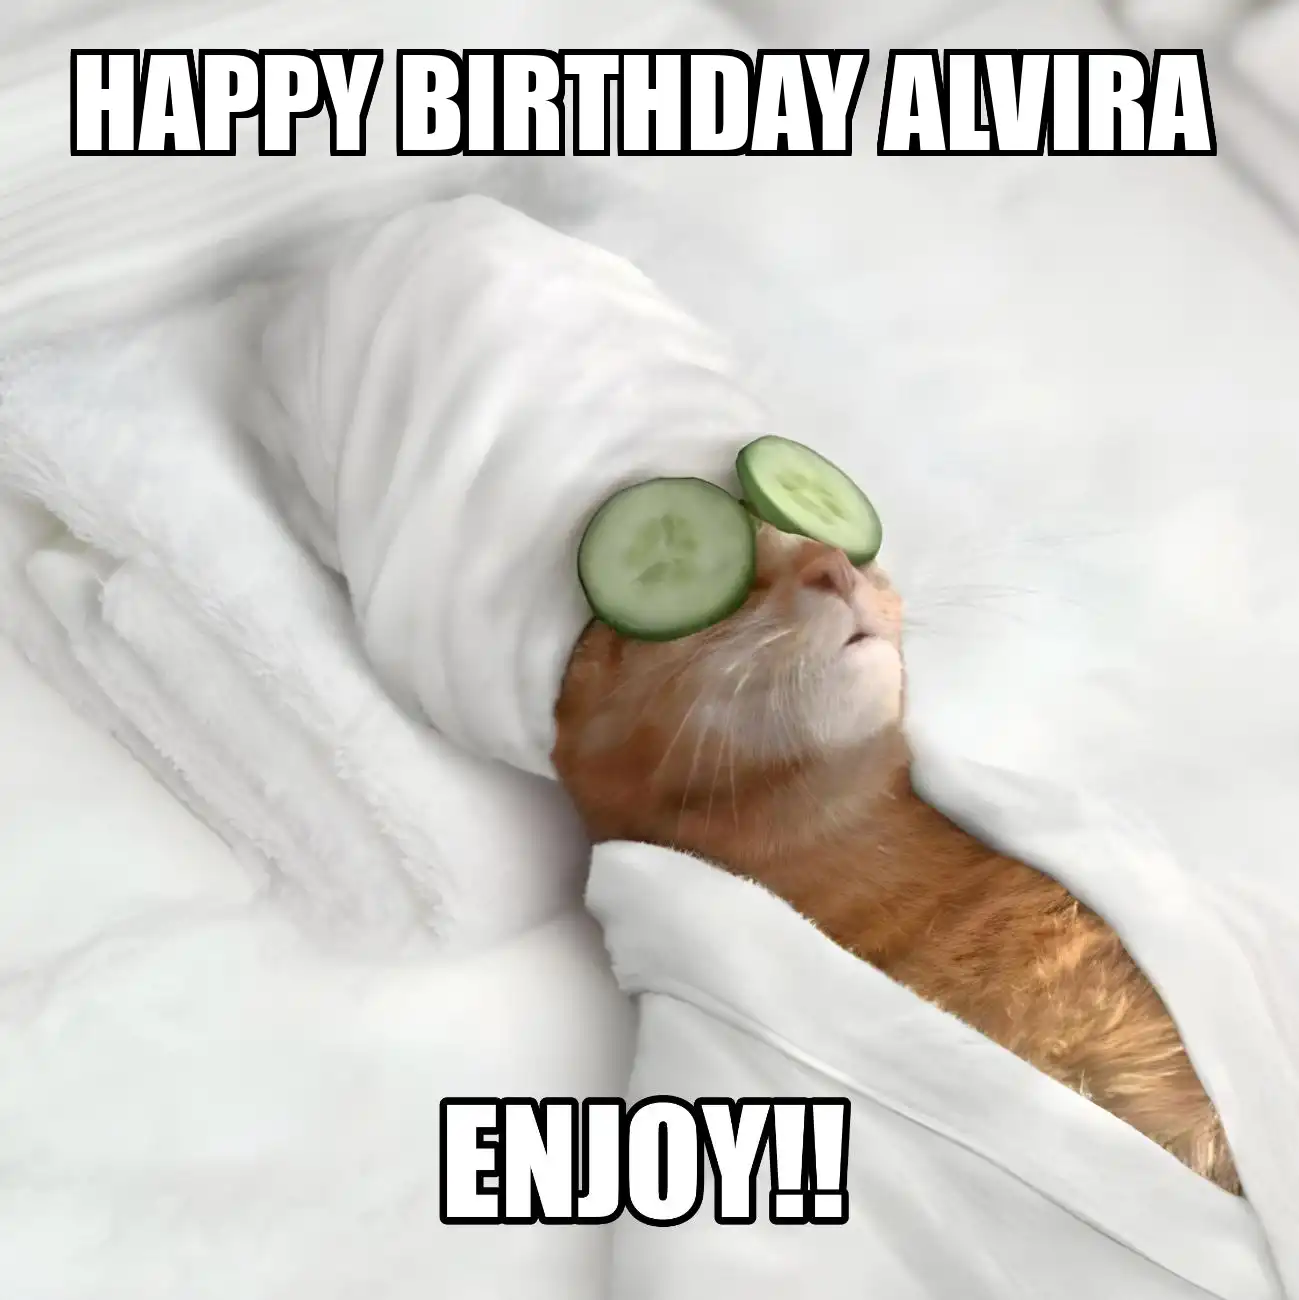 Happy Birthday Alvira Enjoy Cat Meme